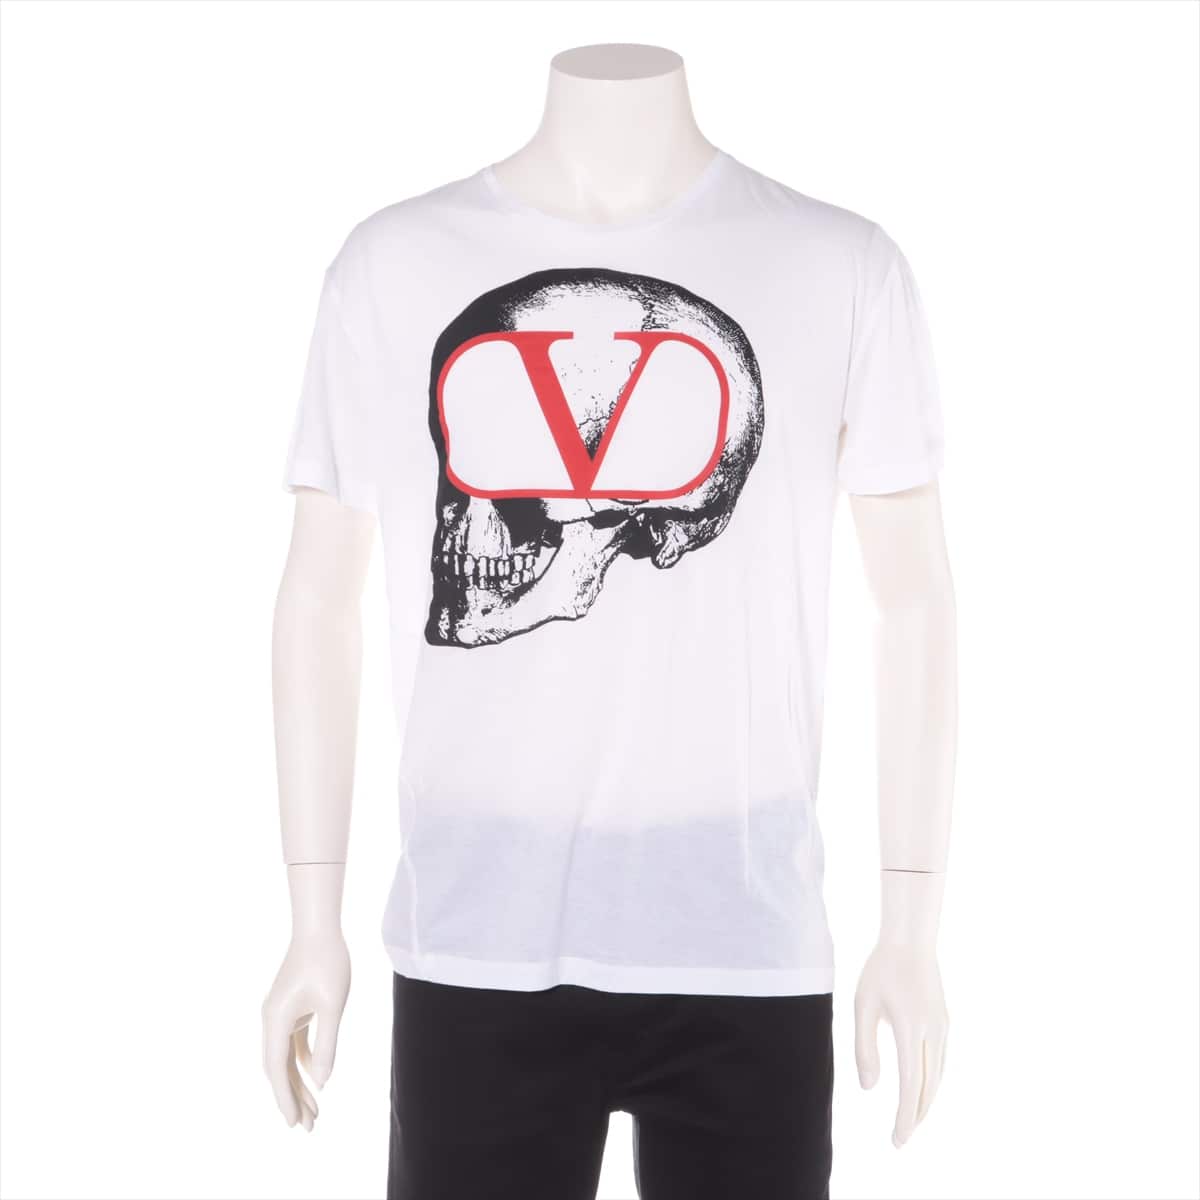 ヴァレンティノ×アンダーカバー 19AW コットン Tシャツ M メンズ ホワイト  スカル ロゴ